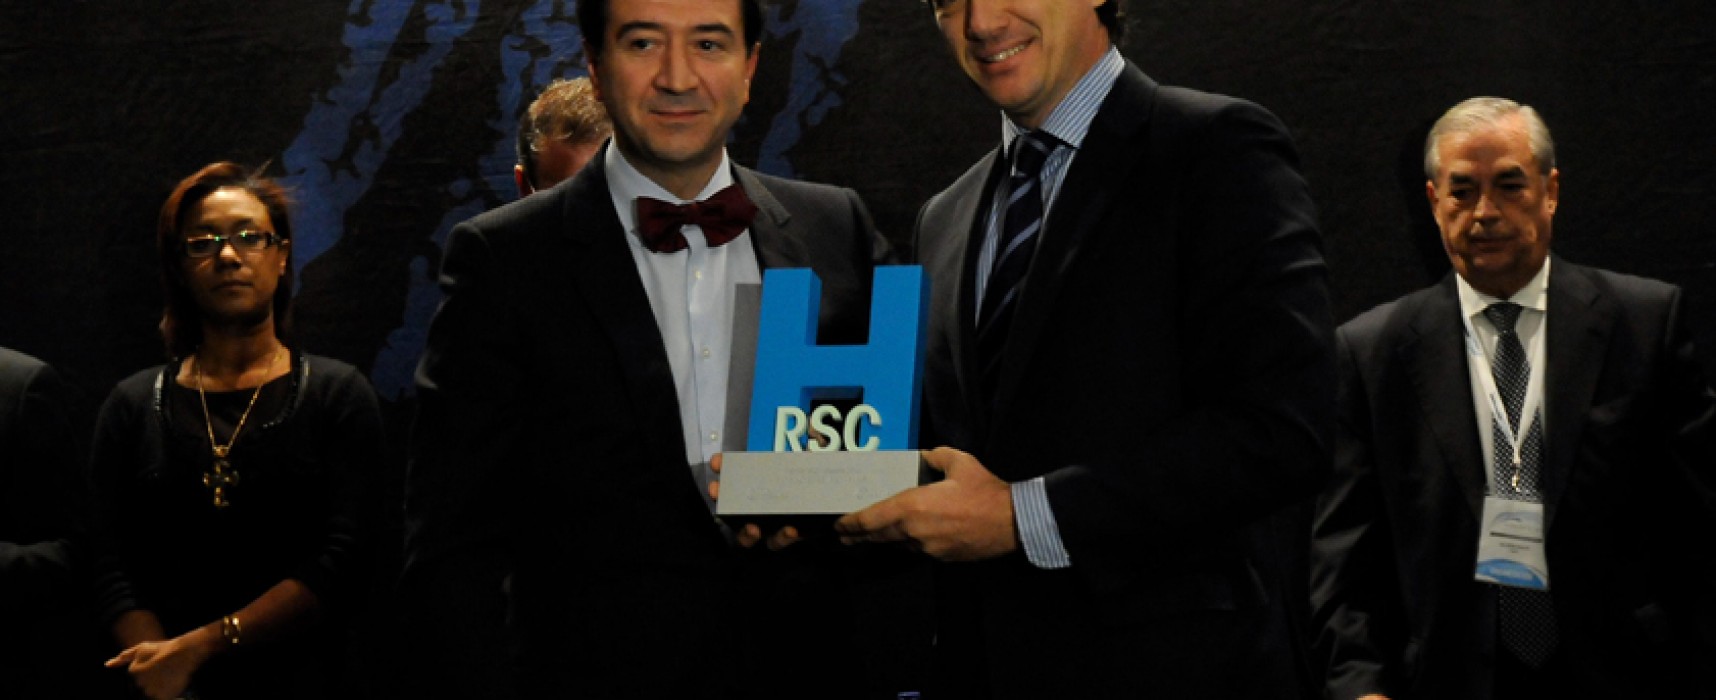 Convocados los Premios RSC Hotelera